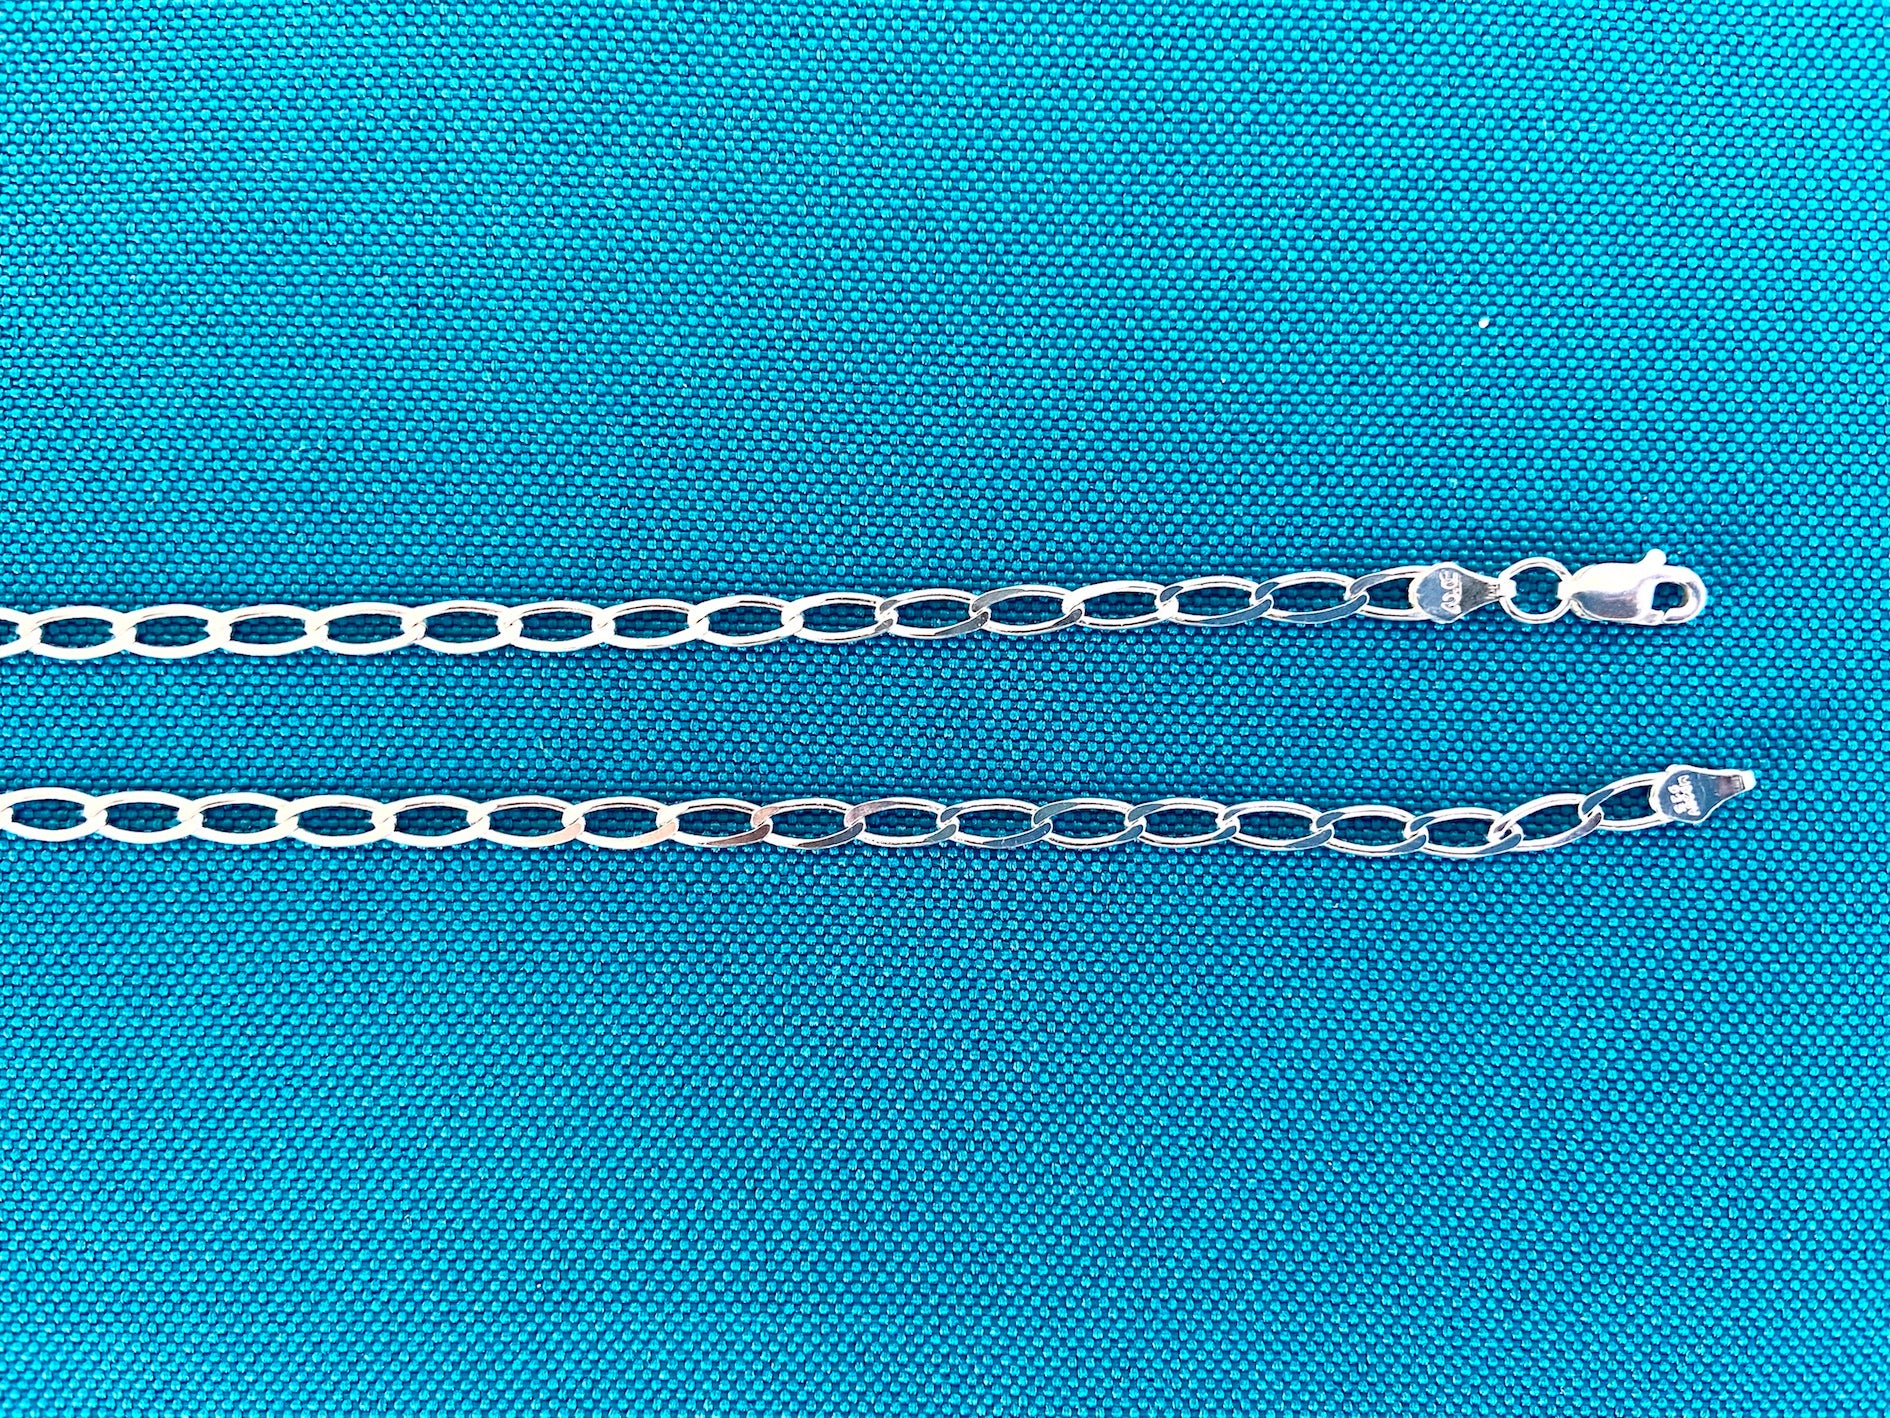 Figaro silver chain